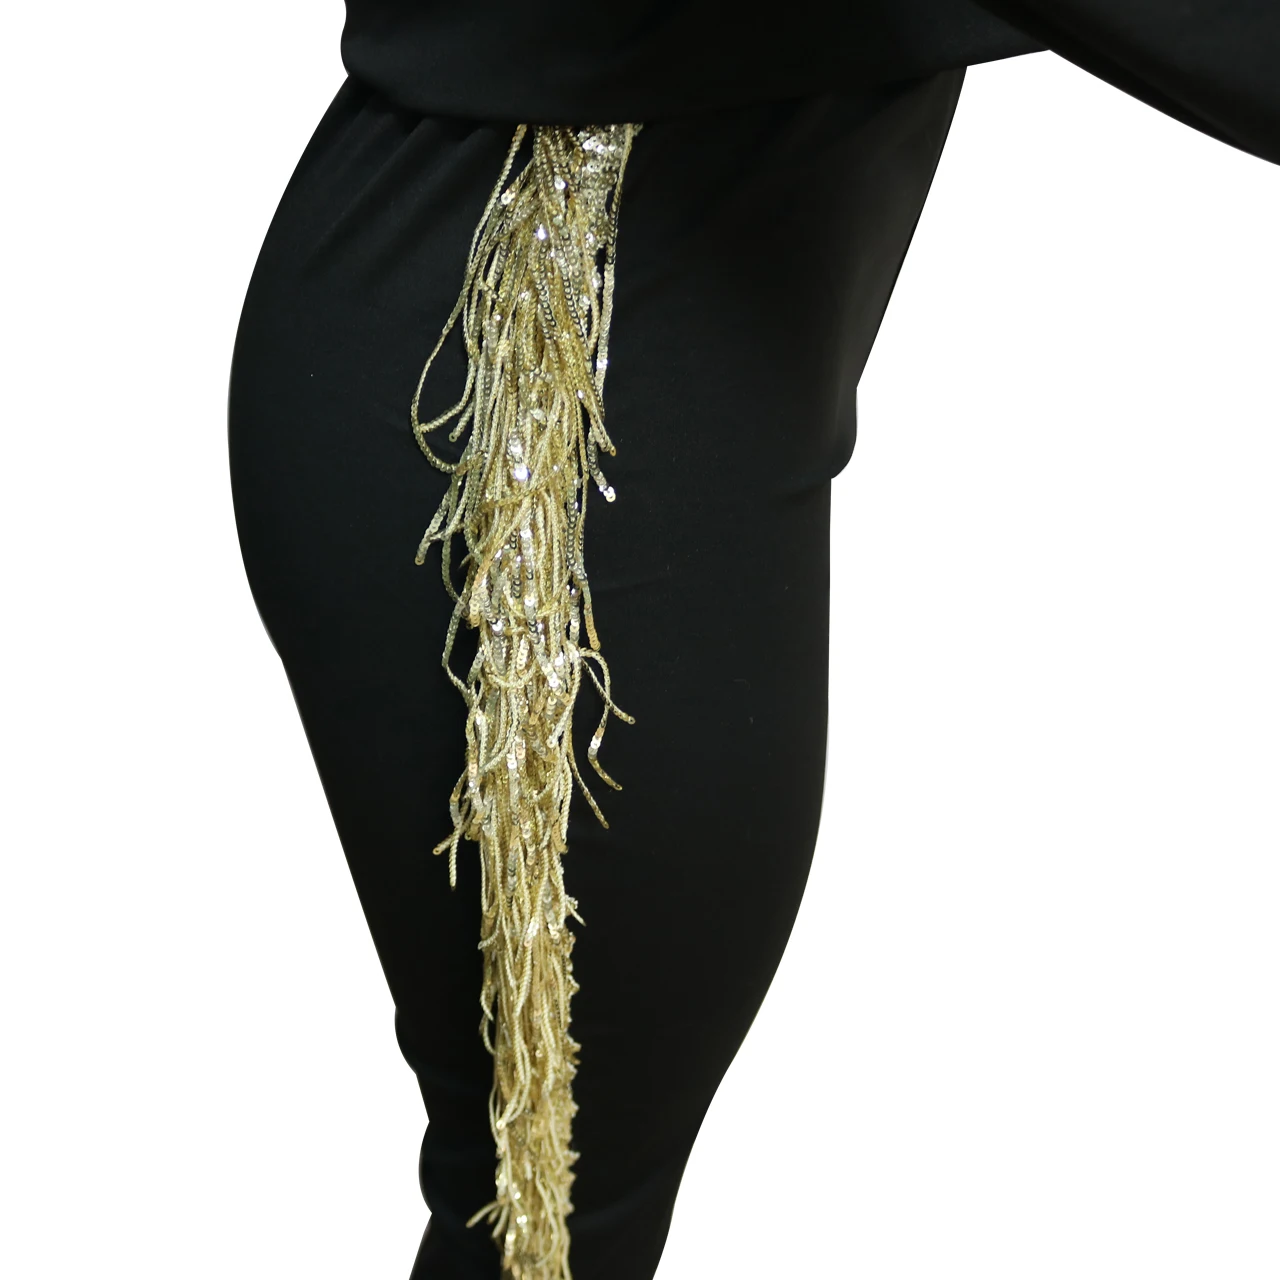 Wjustforu, 4 цвета, Модный комплект из двух предметов с кисточками, Женский пуловер с открытыми плечами, топы+ брюки-карандаш, укороченный Повседневный Спортивный костюм